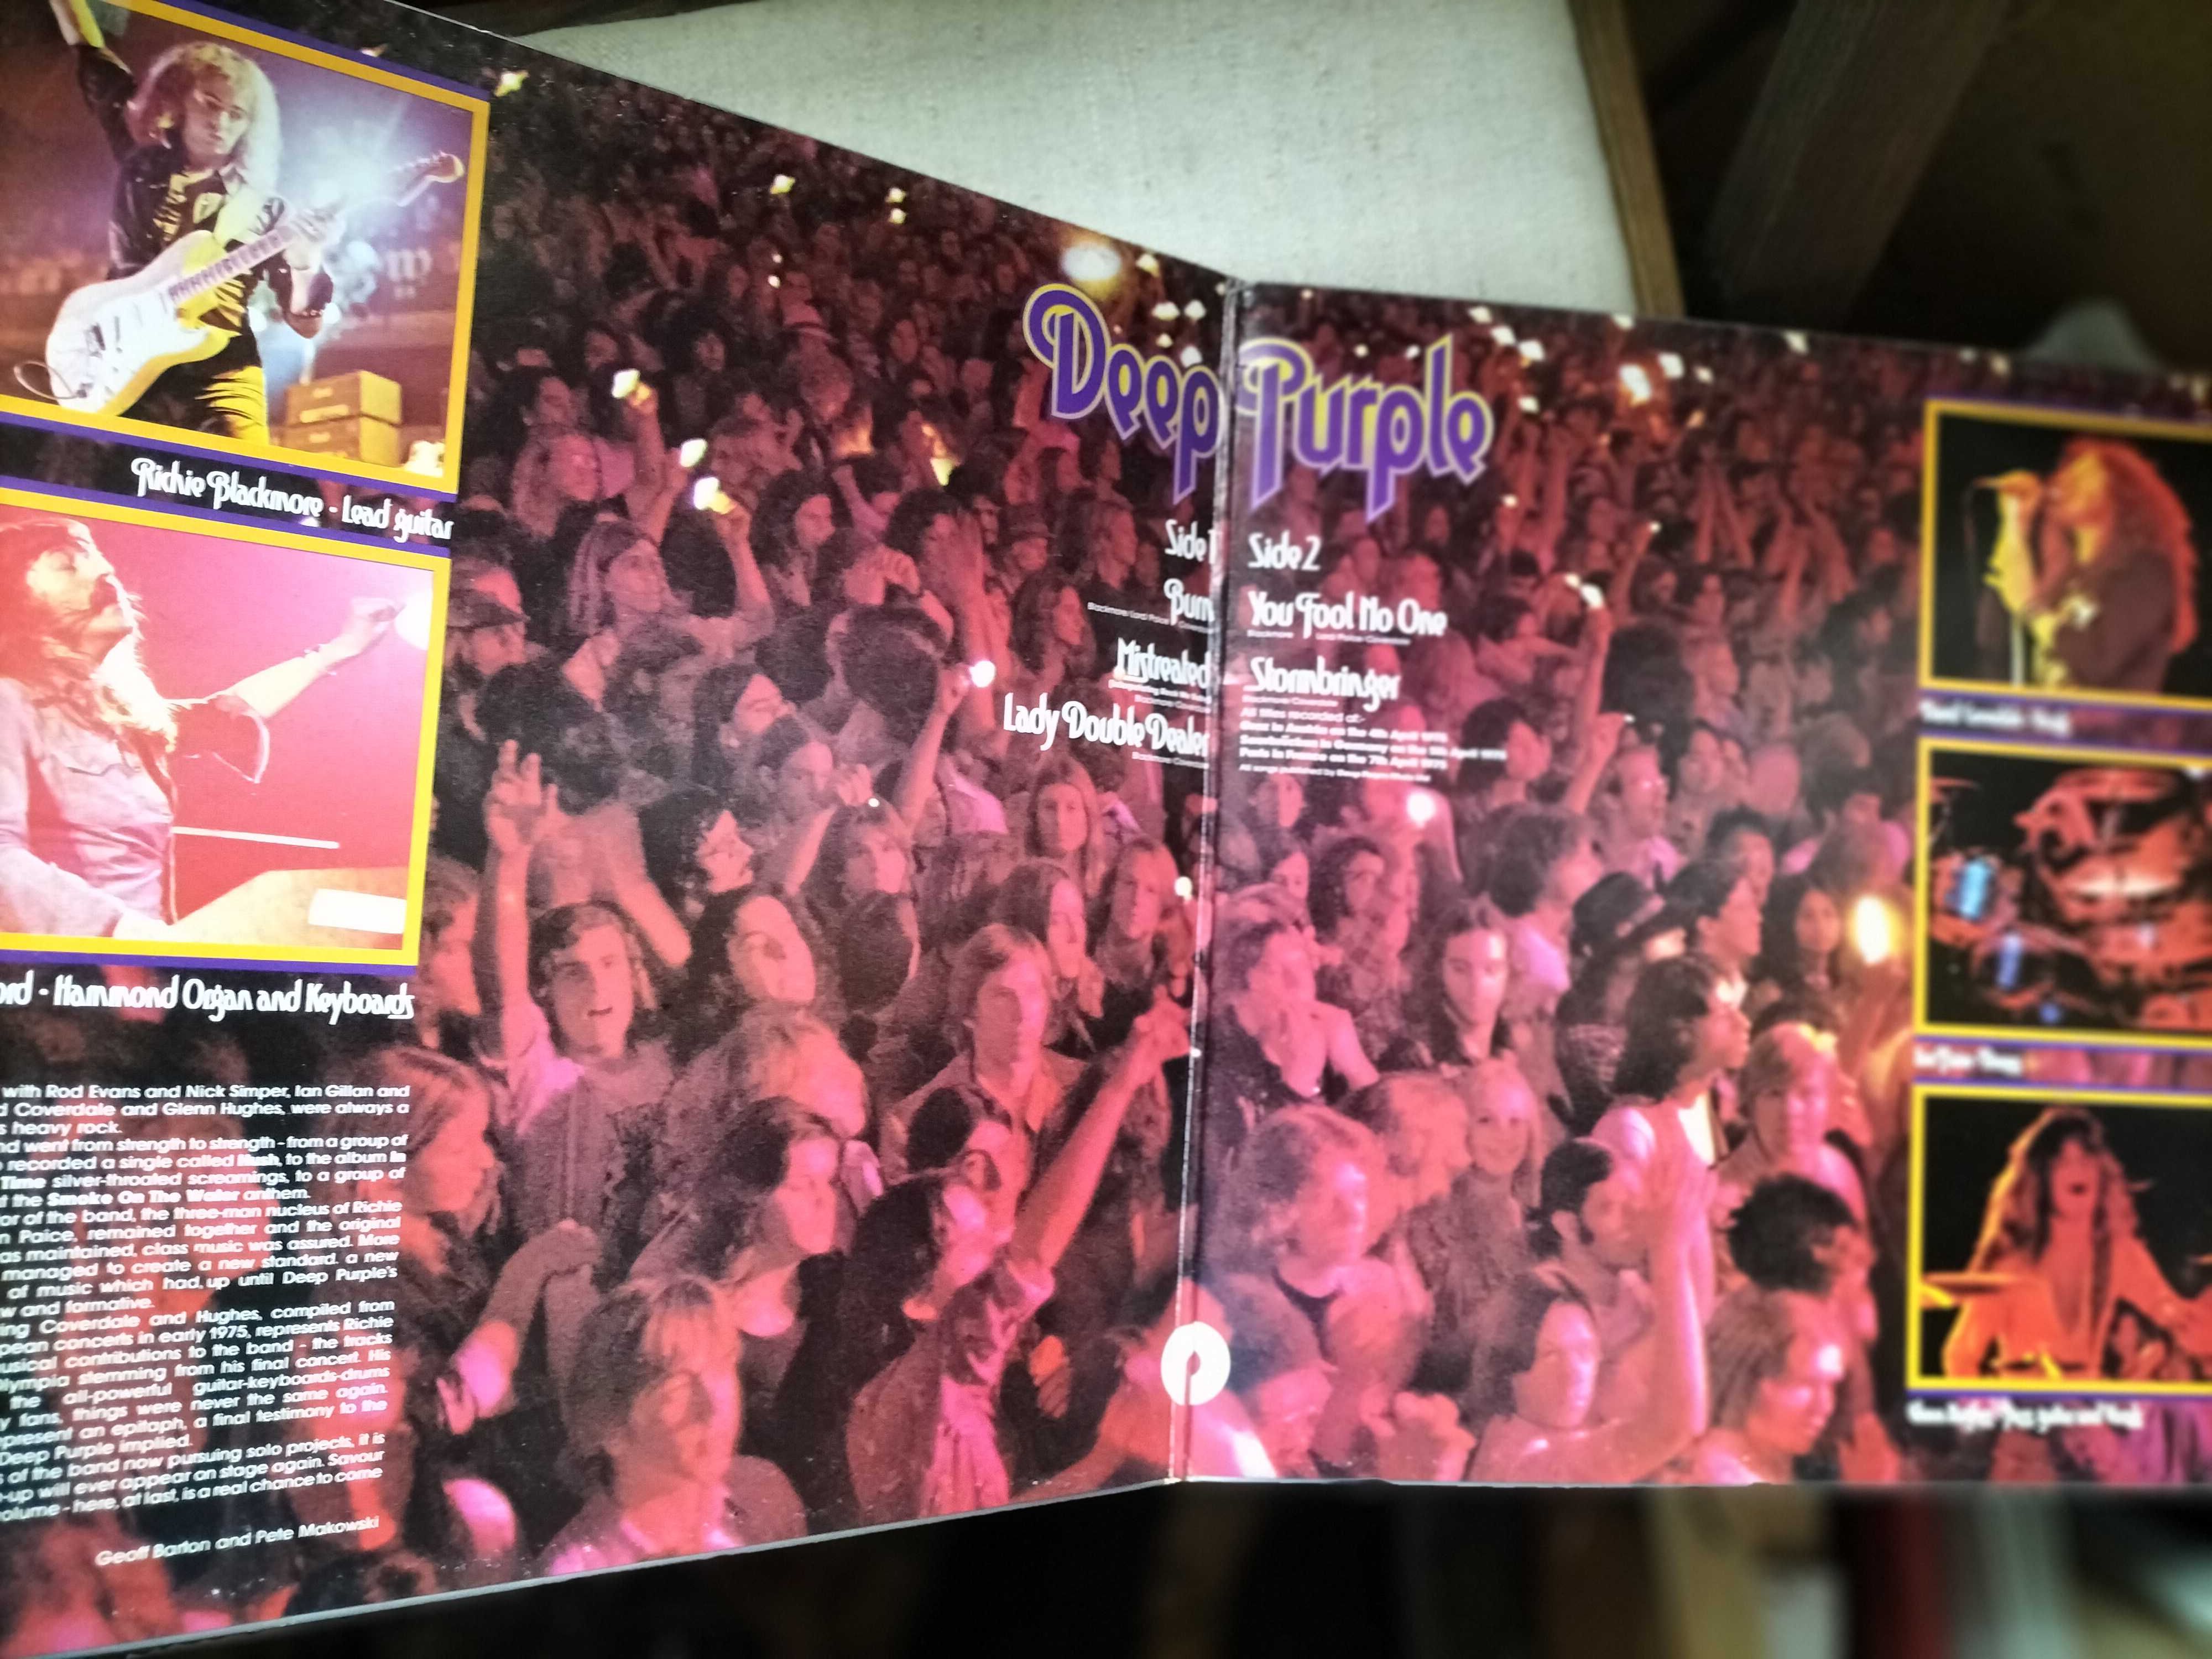 Winyl Deep Purple  " Made in Europe  "  near mint